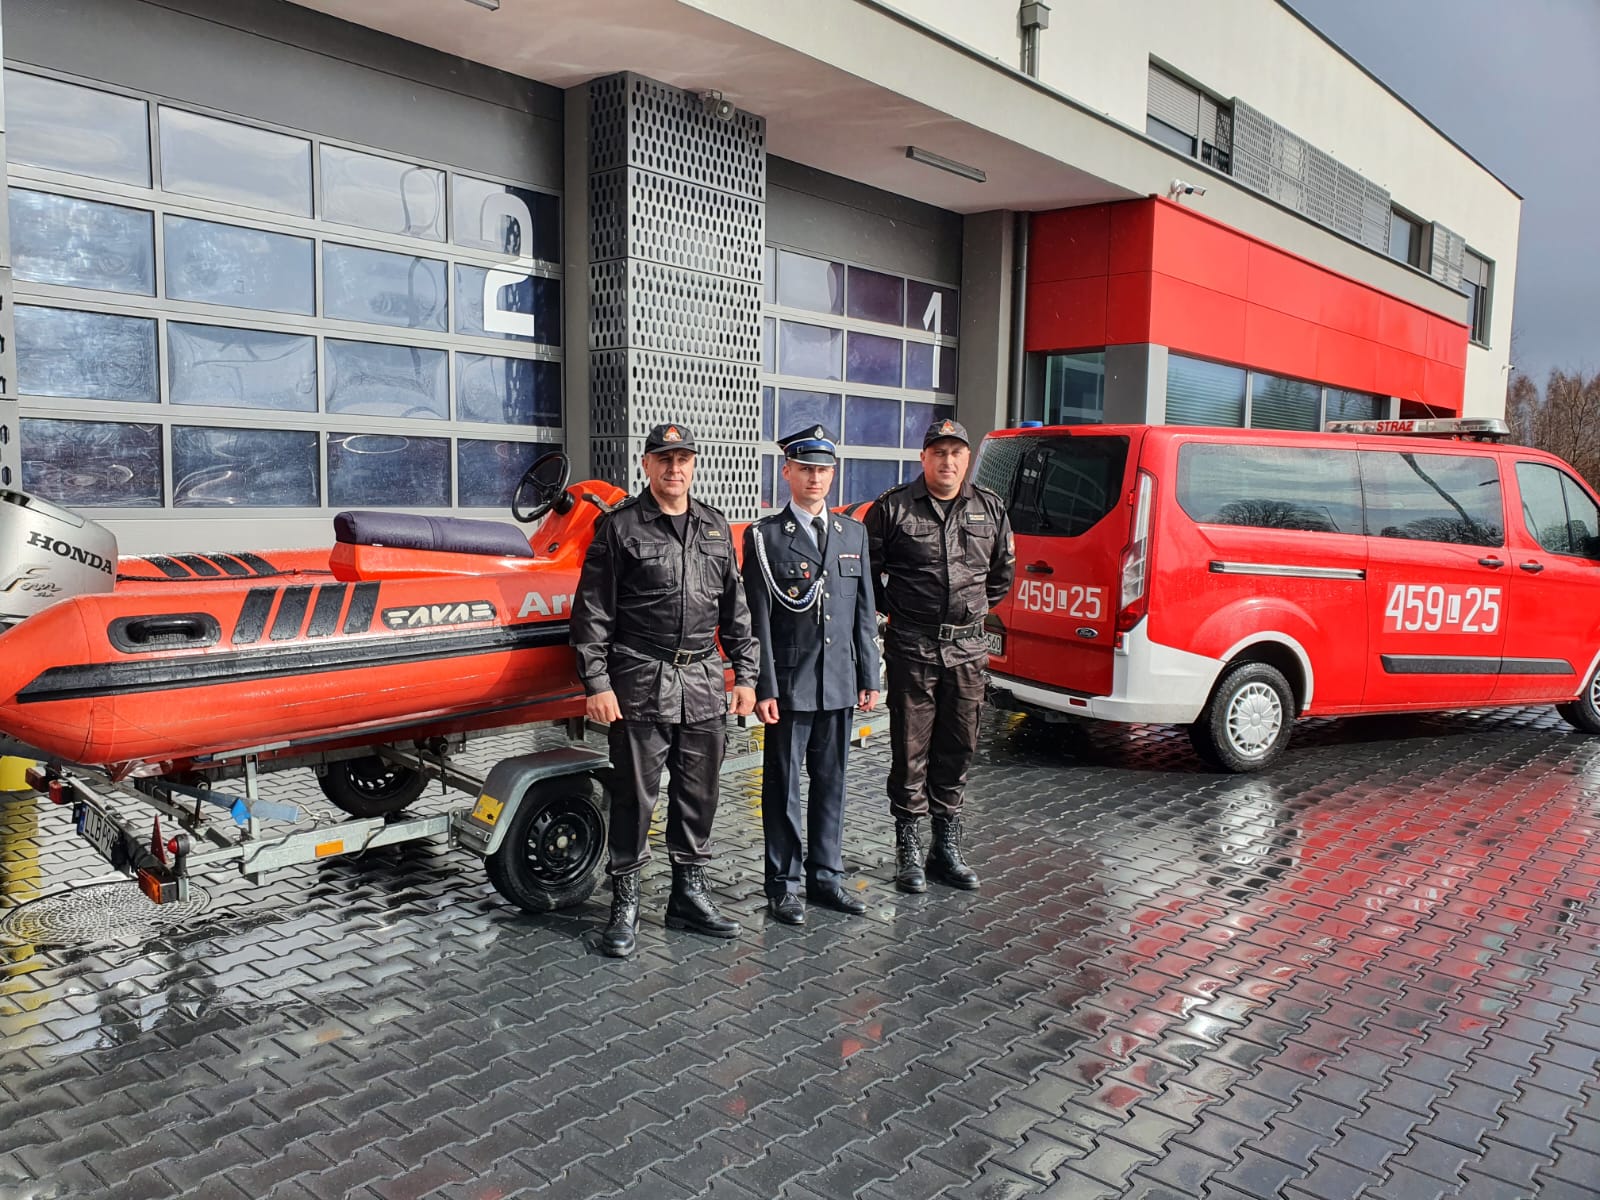 Strażacy z Lubartowa przekazali łódź jednostce OSP w Ostrowie Lubelskim (zdjęcia)